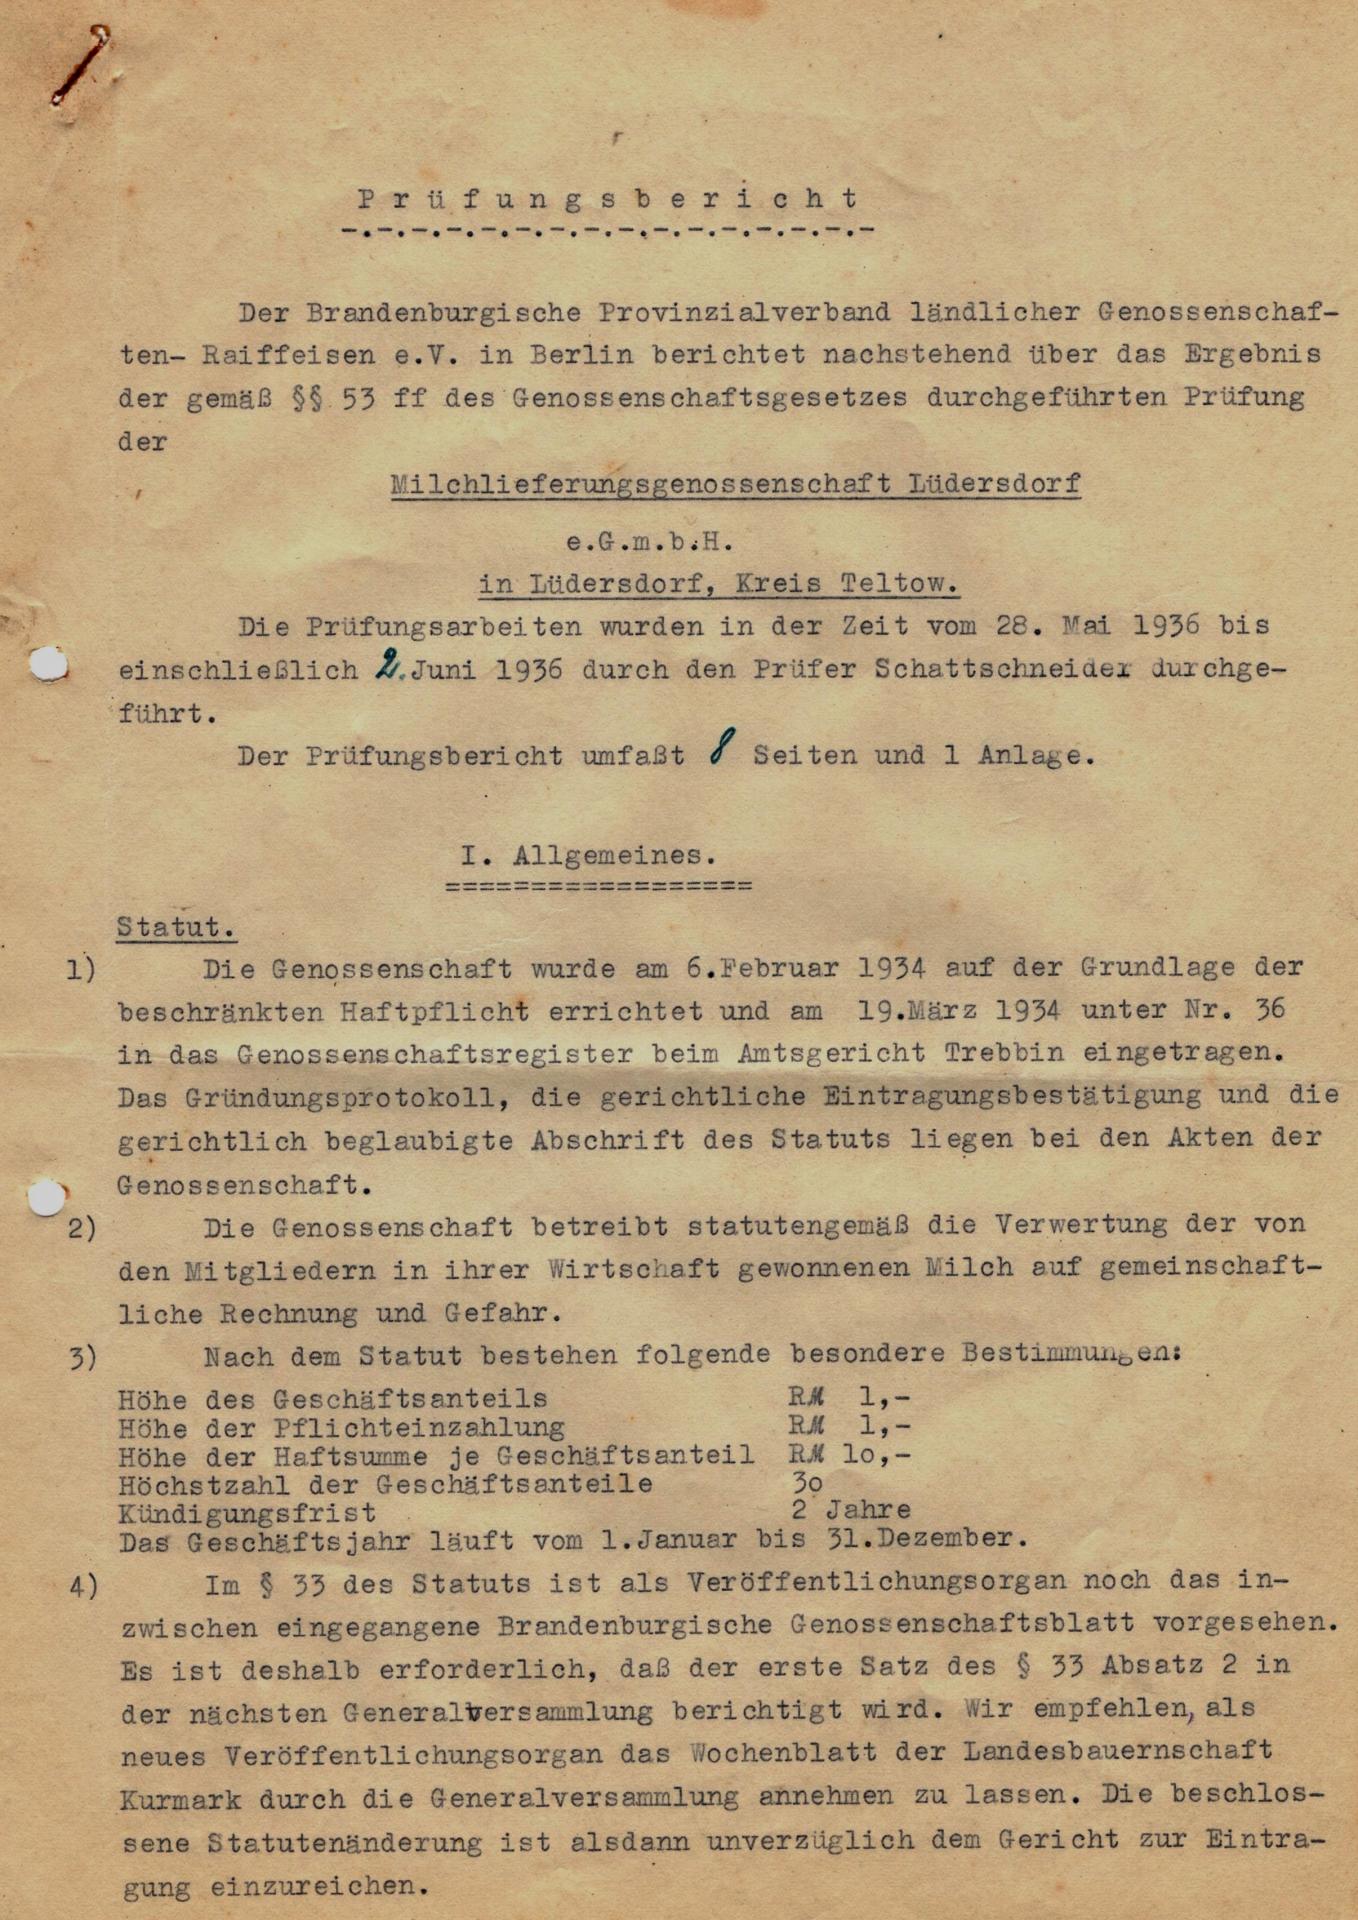 28_05_1936_Pruefungsbericht-Milchlieferungs-genossenschaft Luedersdorf01